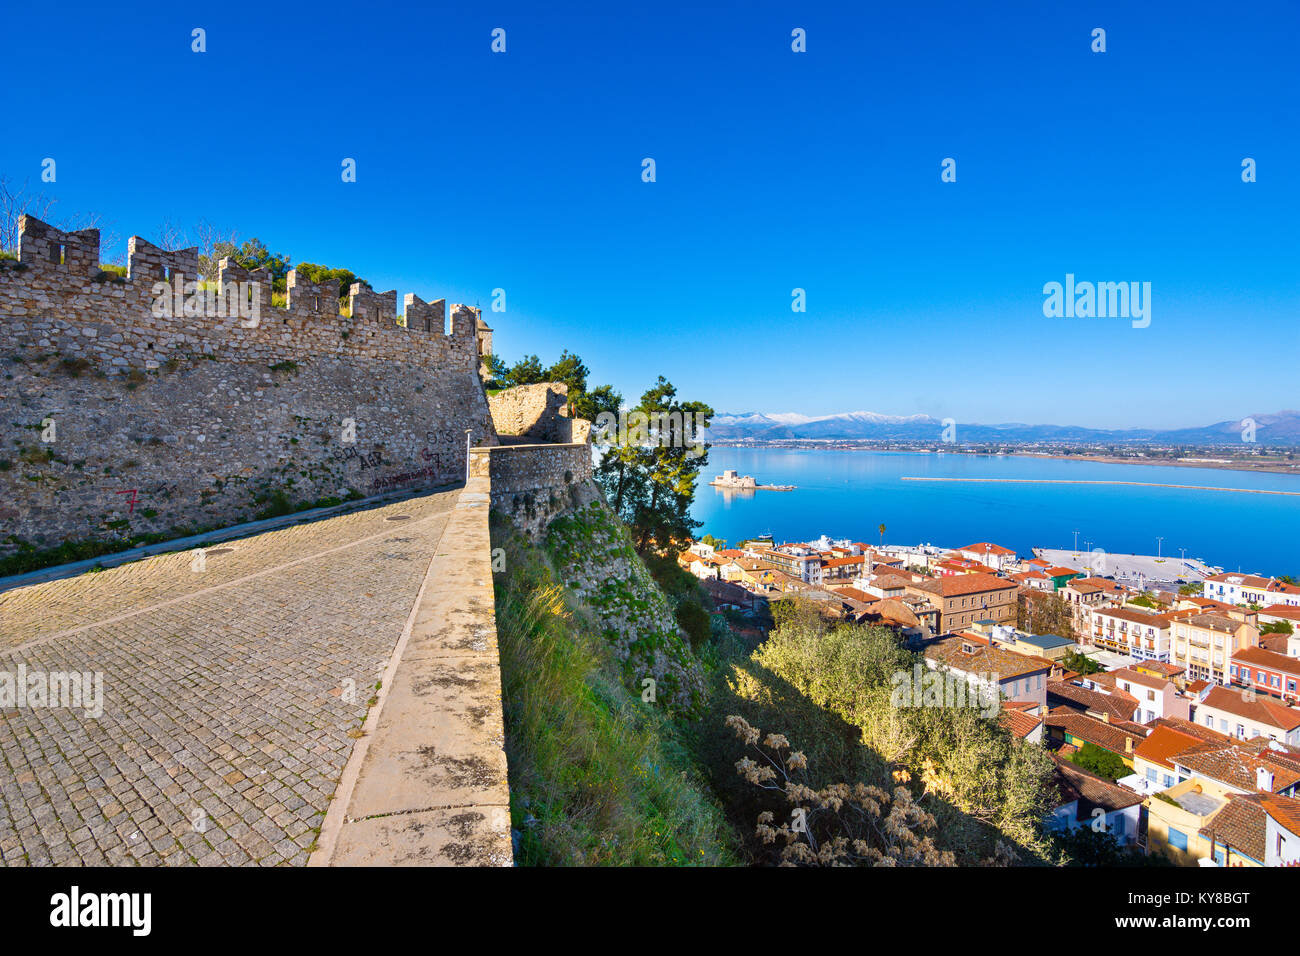 Vieille ville de Nauplie en Grèce Vue de dessus avec des toits, petit port et le château de bourtzi sur l'eau de la mer Méditerranée Banque D'Images